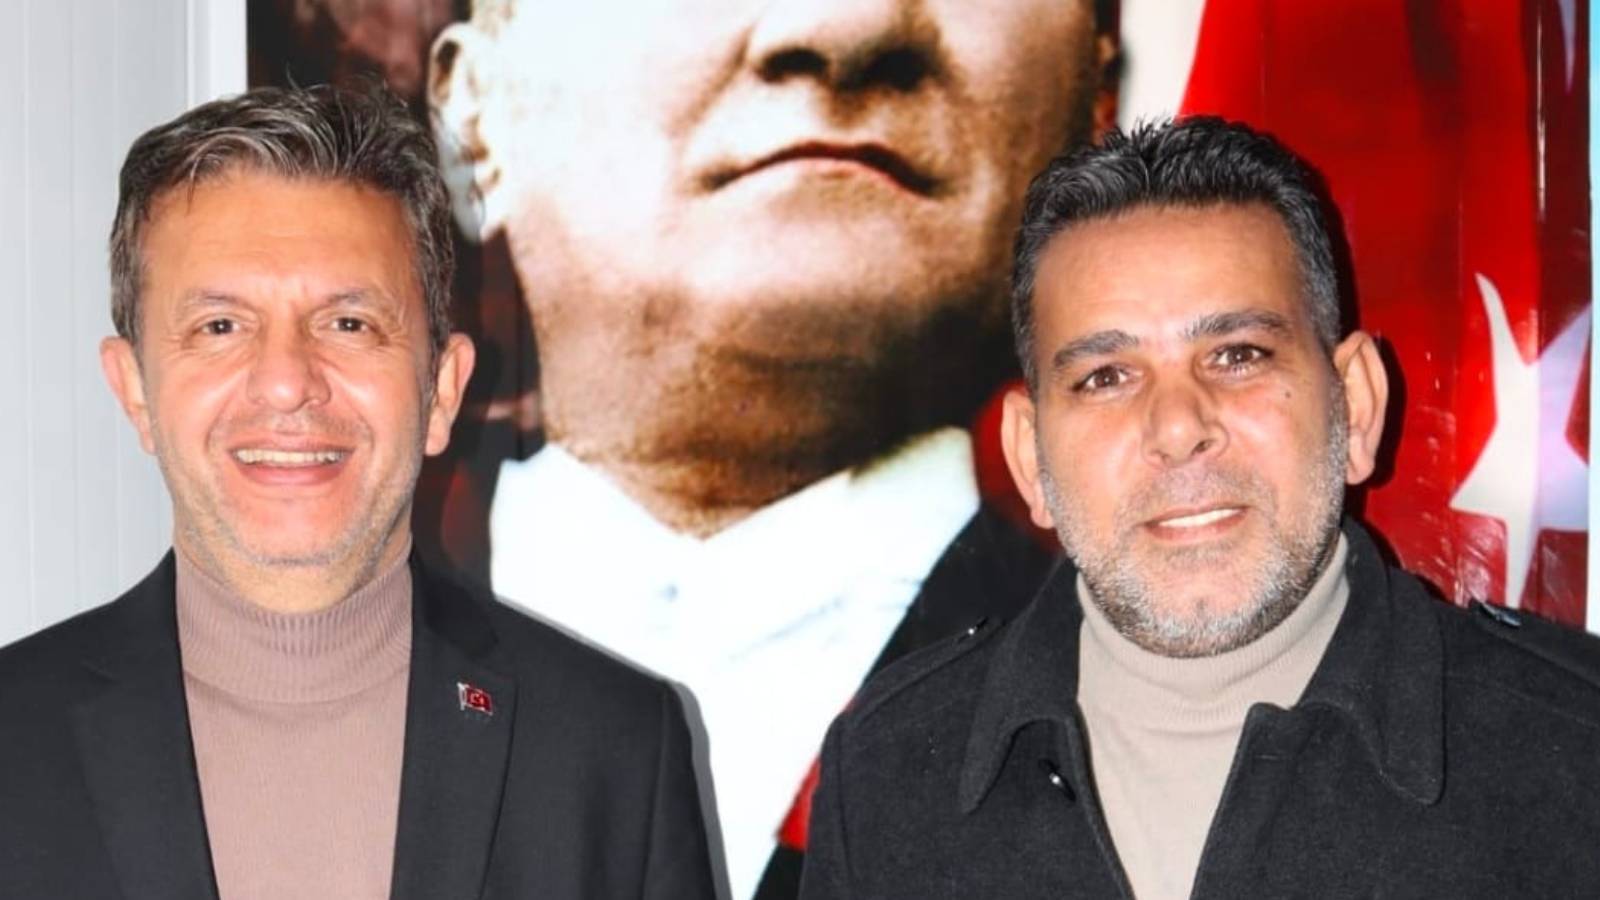 Zafer Partisi Antakya adayı, CHP 'lehine' adaylıktan çekildi